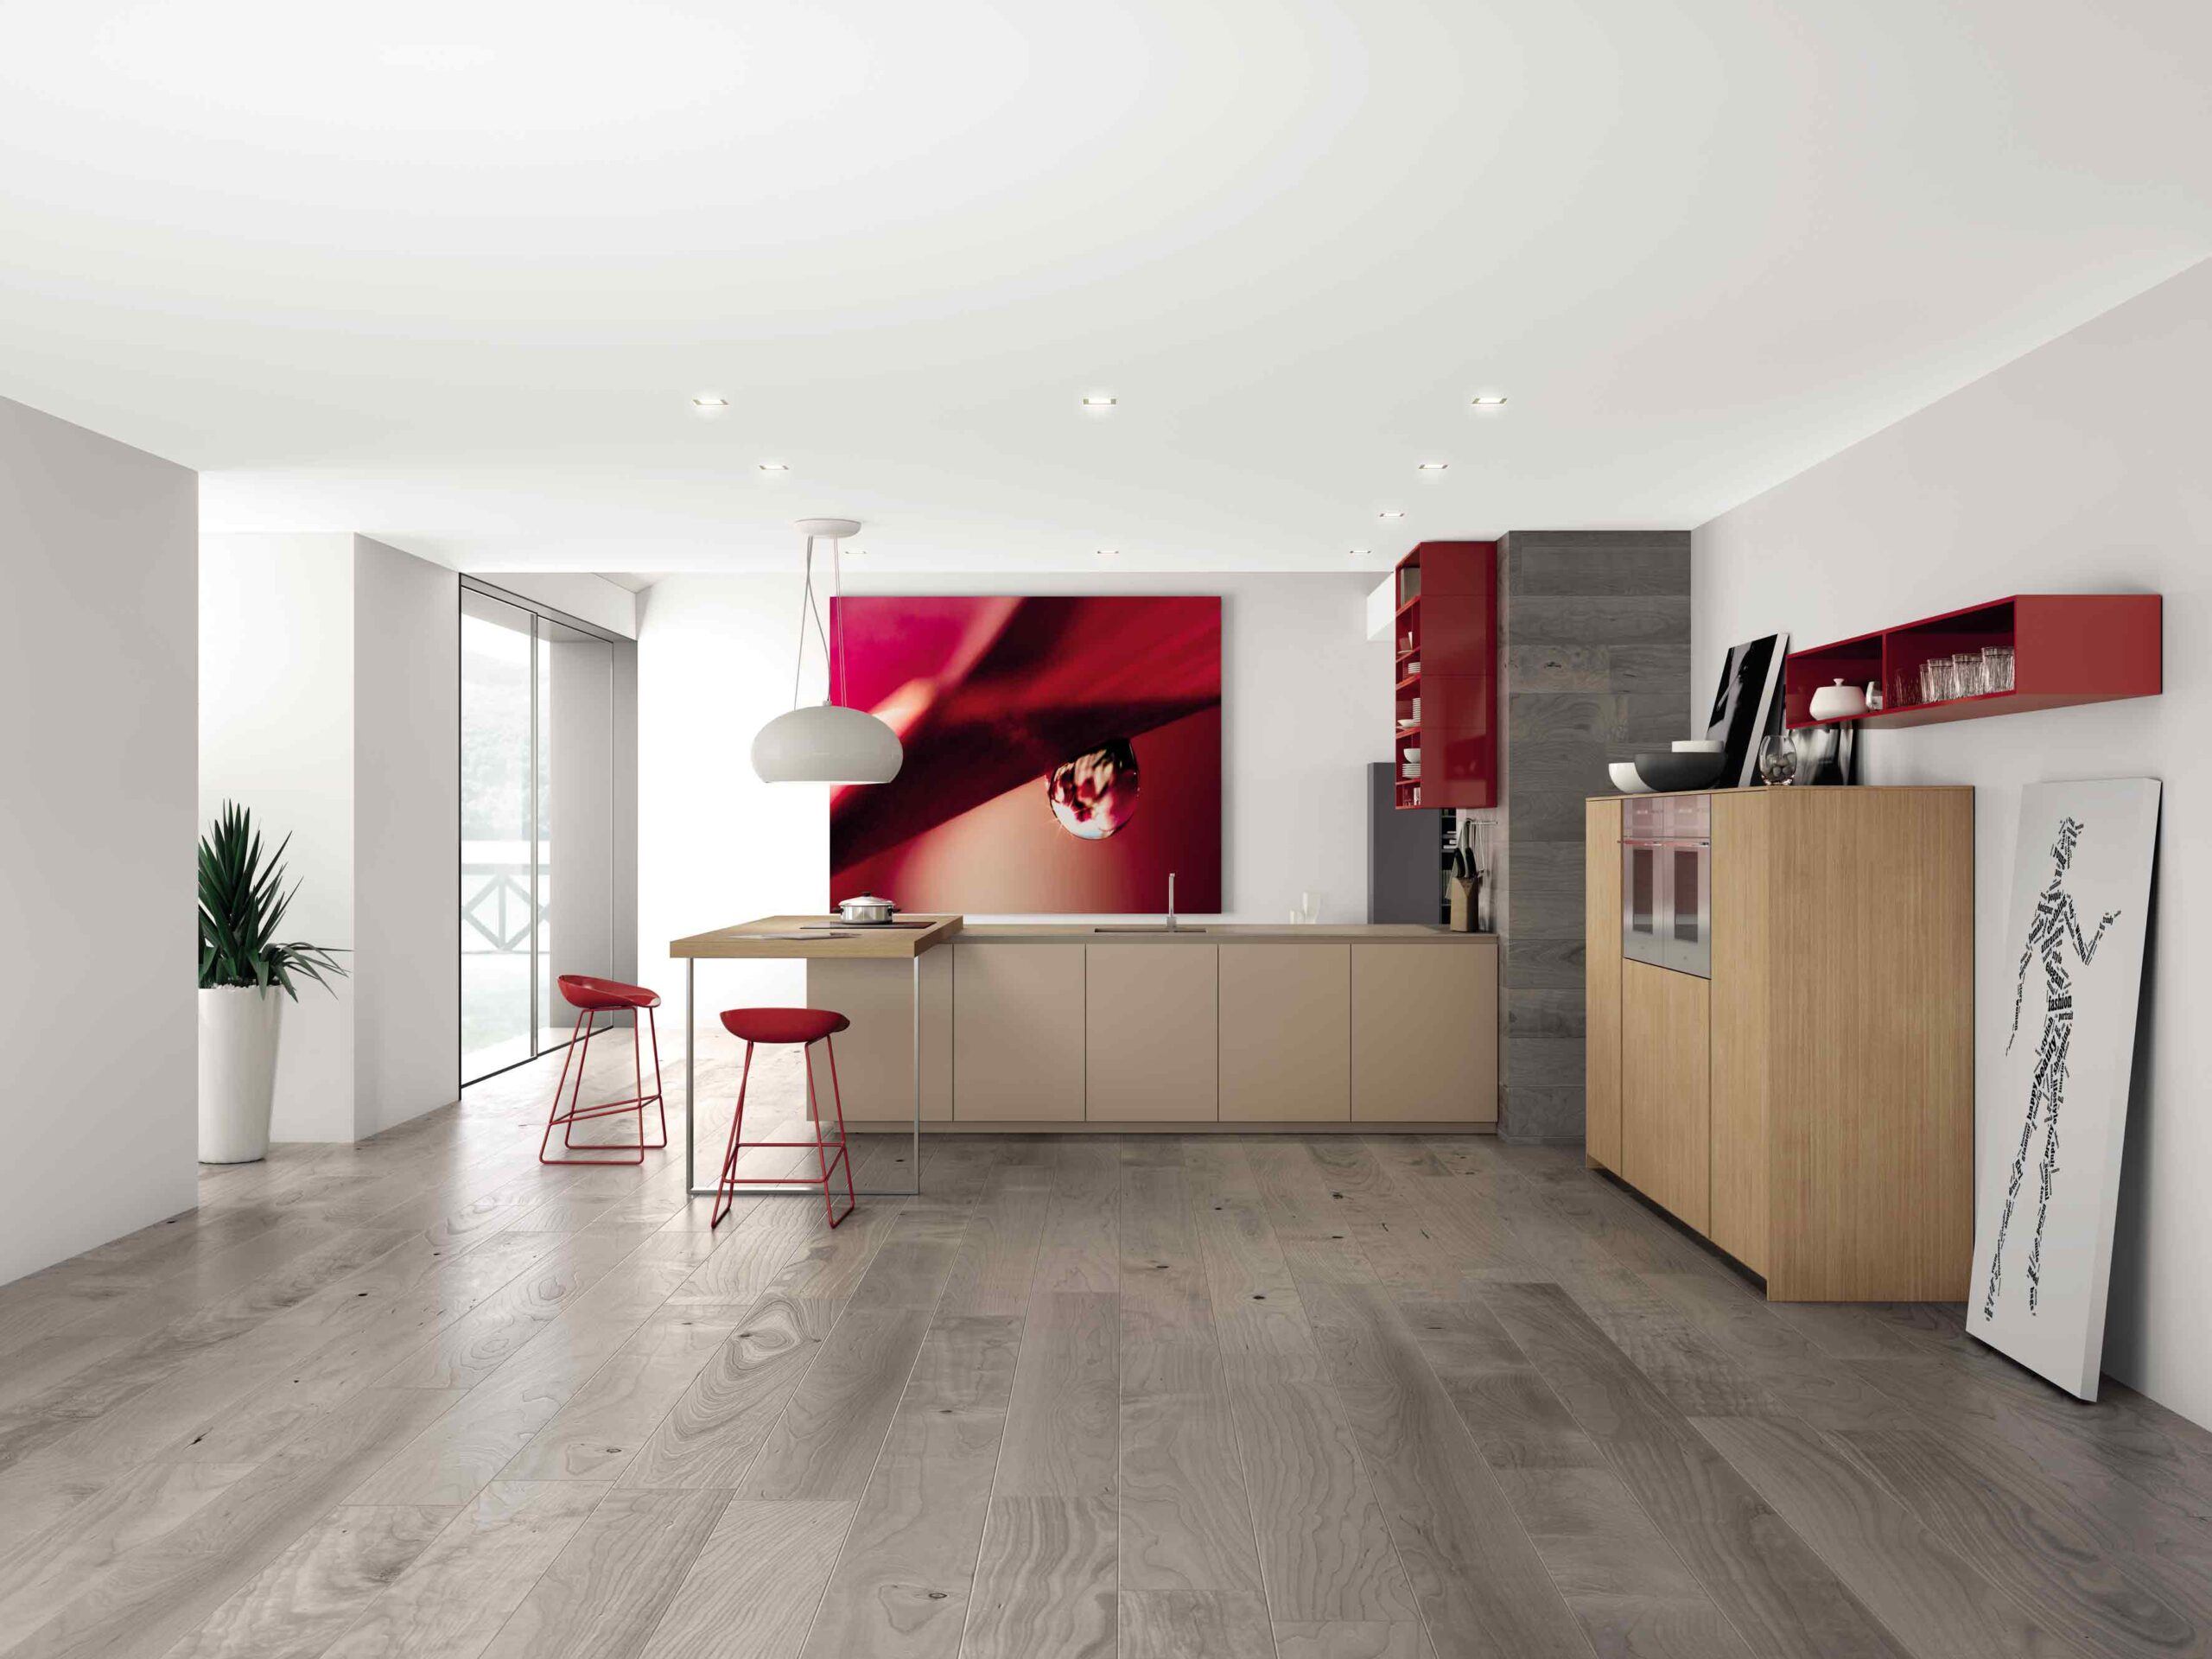 Marconato e Zappa - product design - kitchen